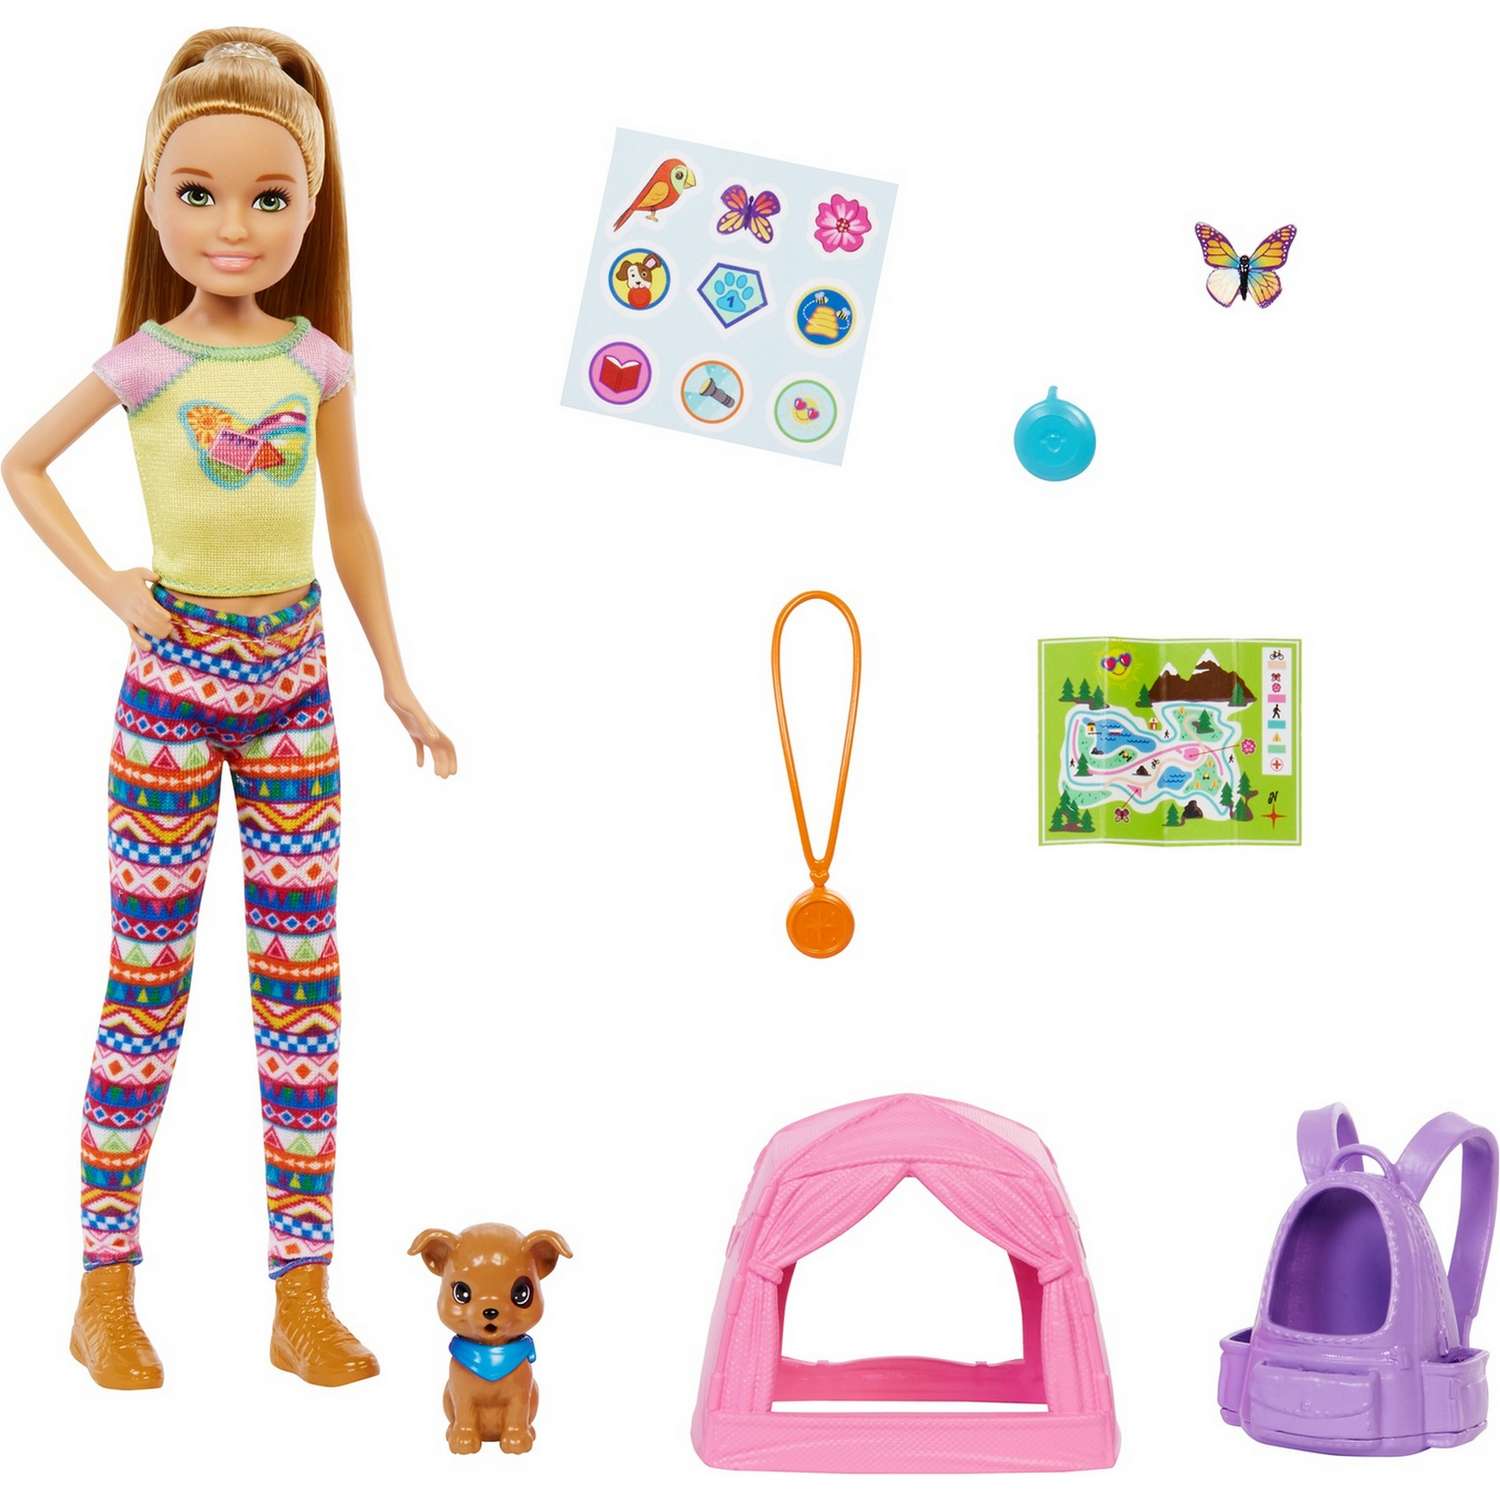 Набор игровой Barbie Кемпинг Стейси кукла с питомцем и аксессуарами HDF70 HDF70 - фото 1